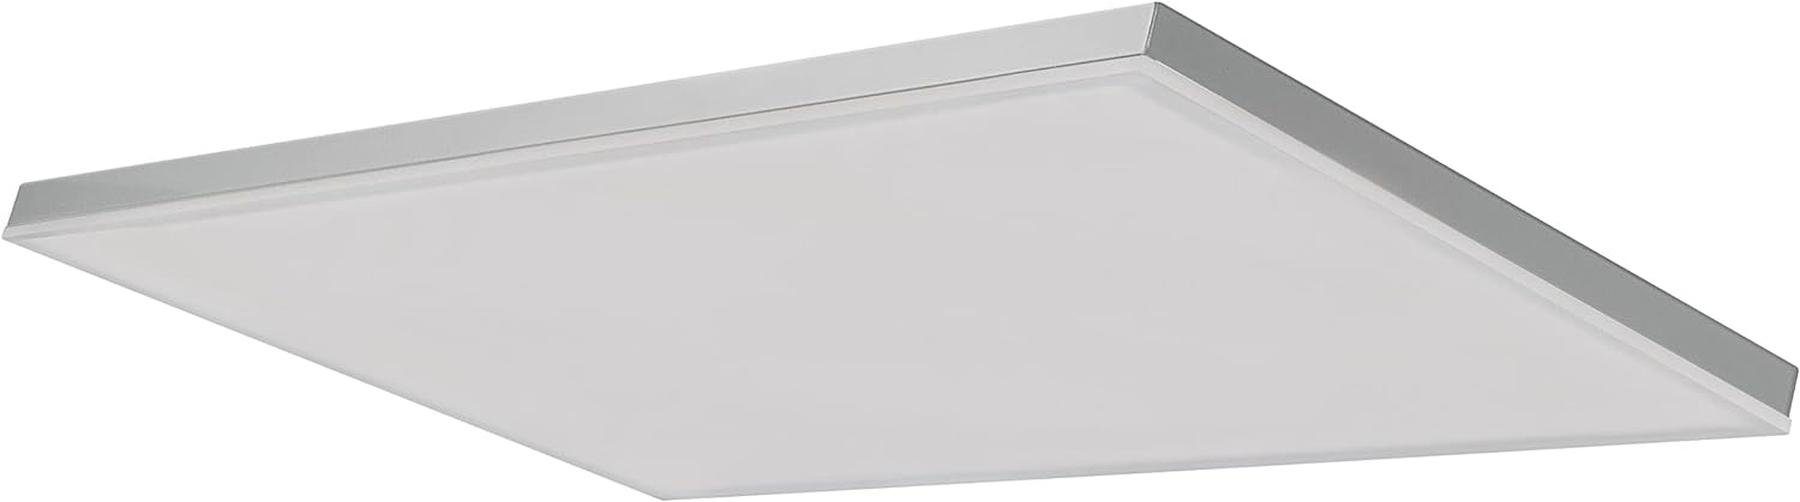 Dieses Lichtquelle 60x 30 Energieeffizienzklasse Ledvance Deckenleuchte der White Produkt enthaelt SMAR, Tunable E Planon dimmbar, Ledvance Frameless warmweiss, Deckenleuchte WiFi LED eine